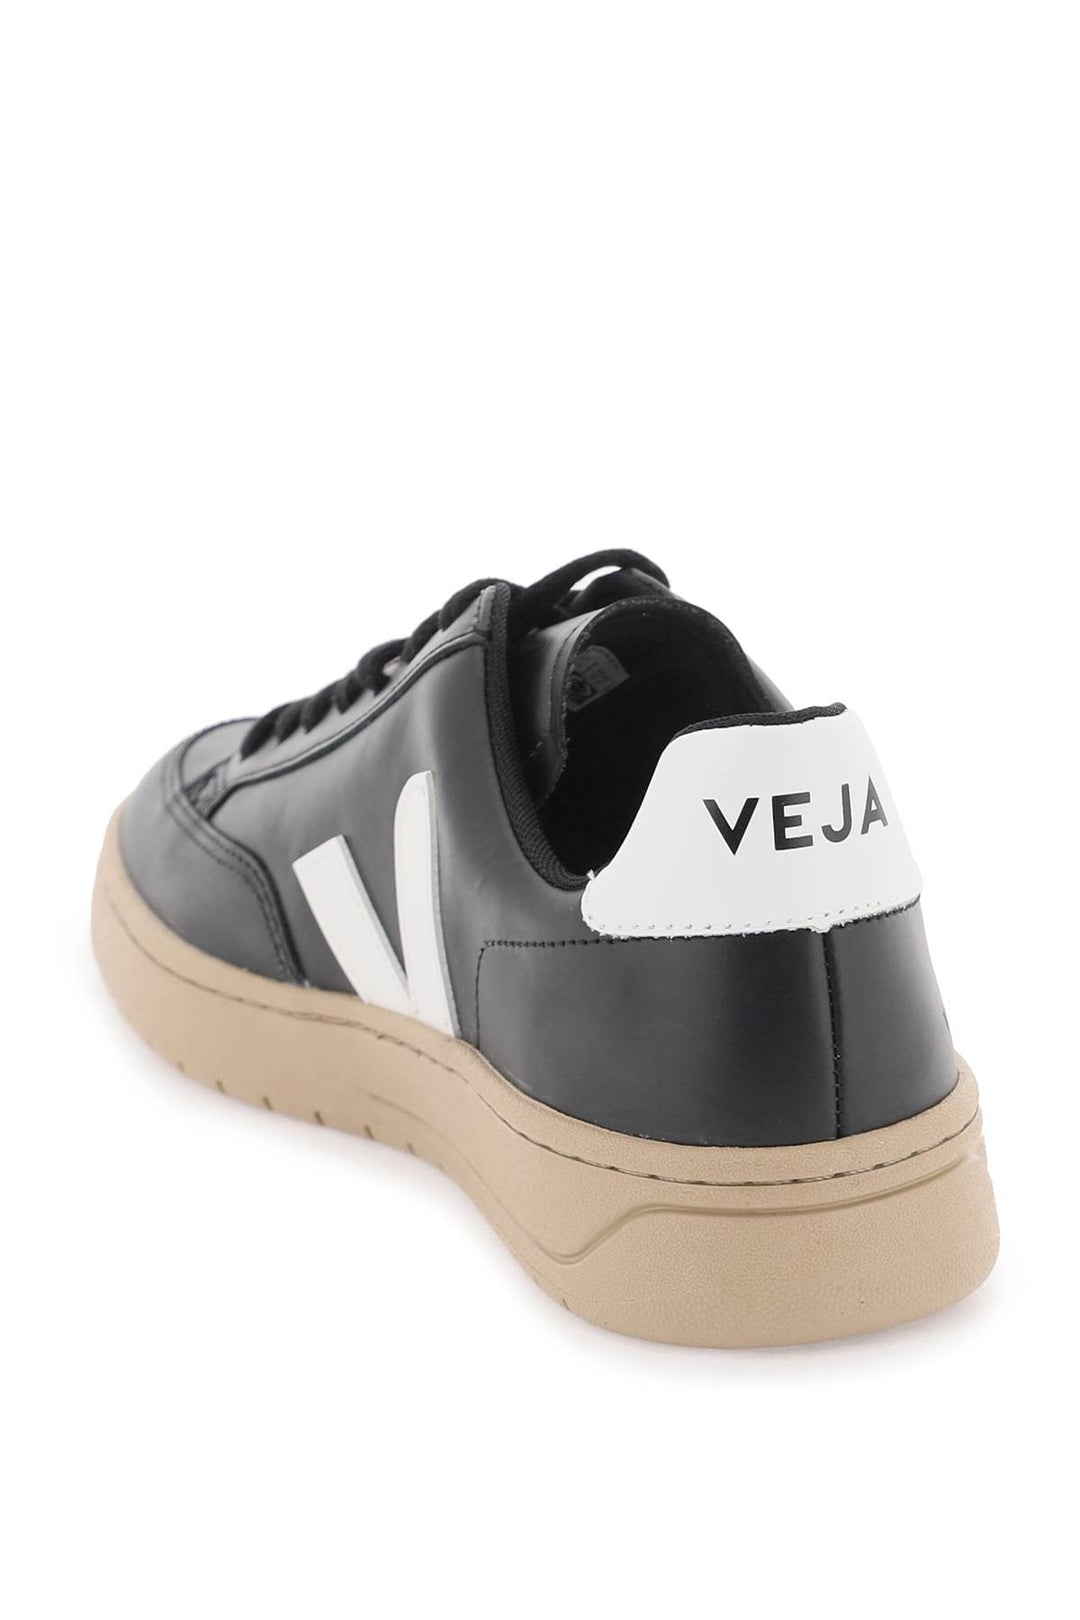 Veja Leather V 12 Sneakers   Nero